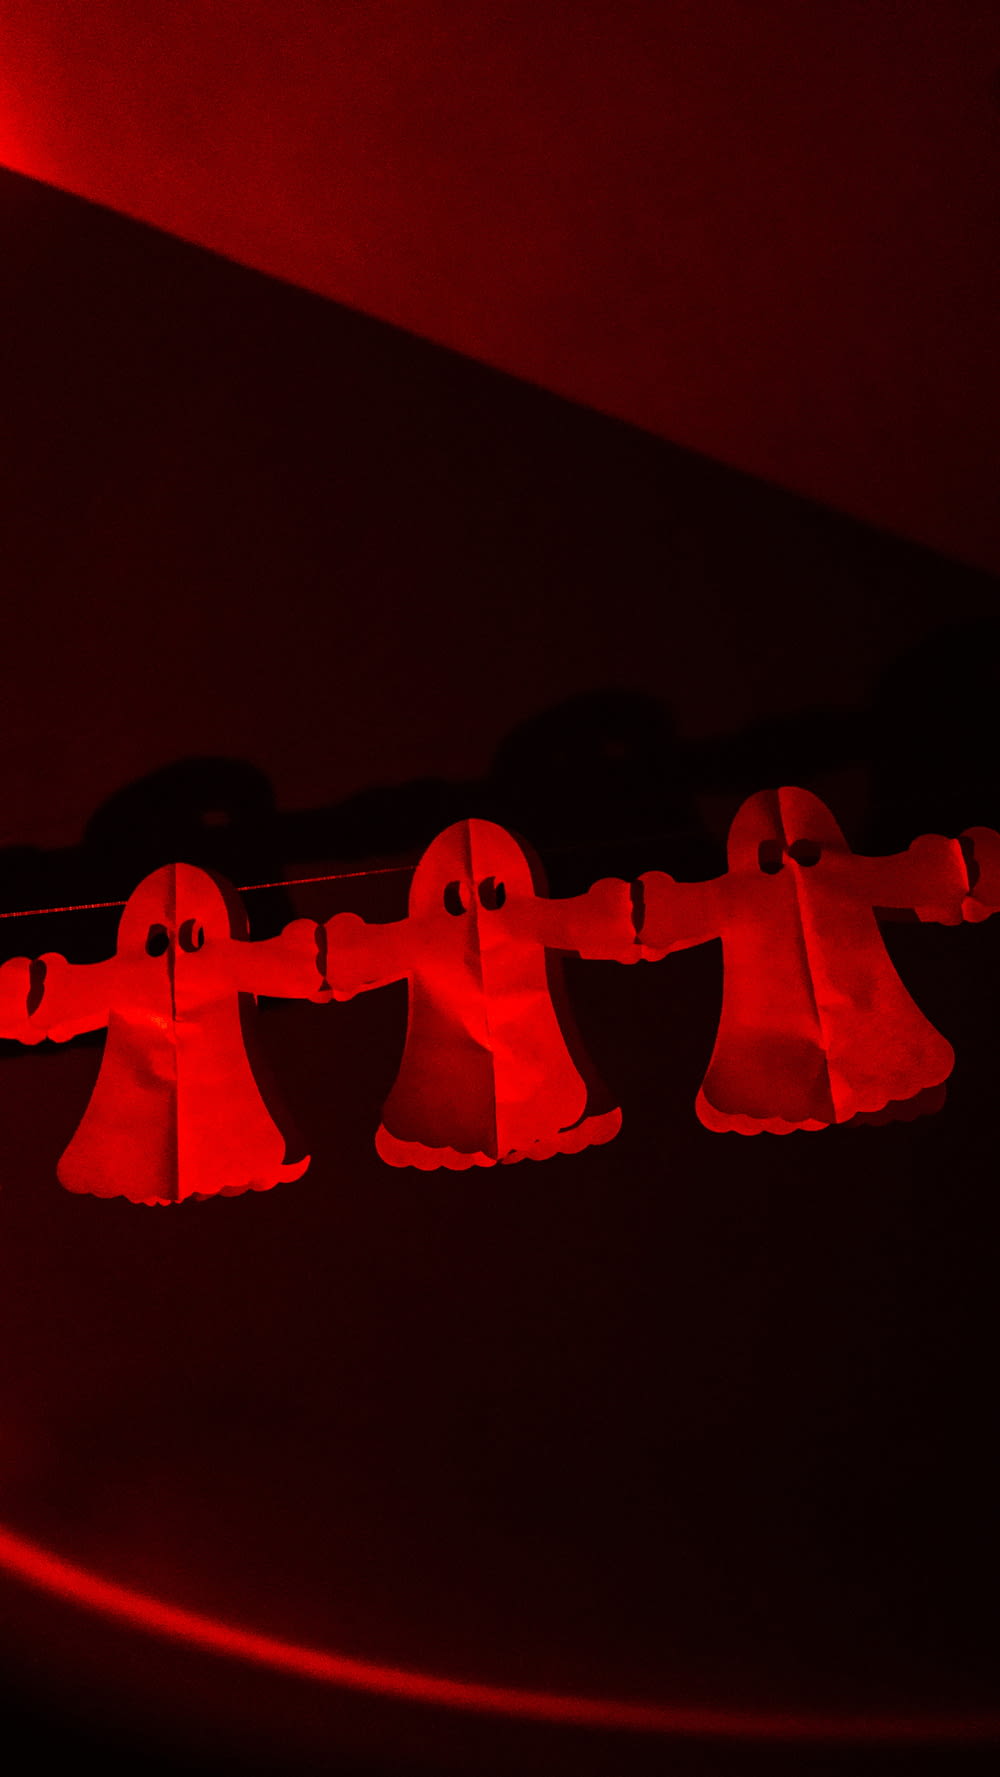 un gruppo di campane appese a una luce rossa